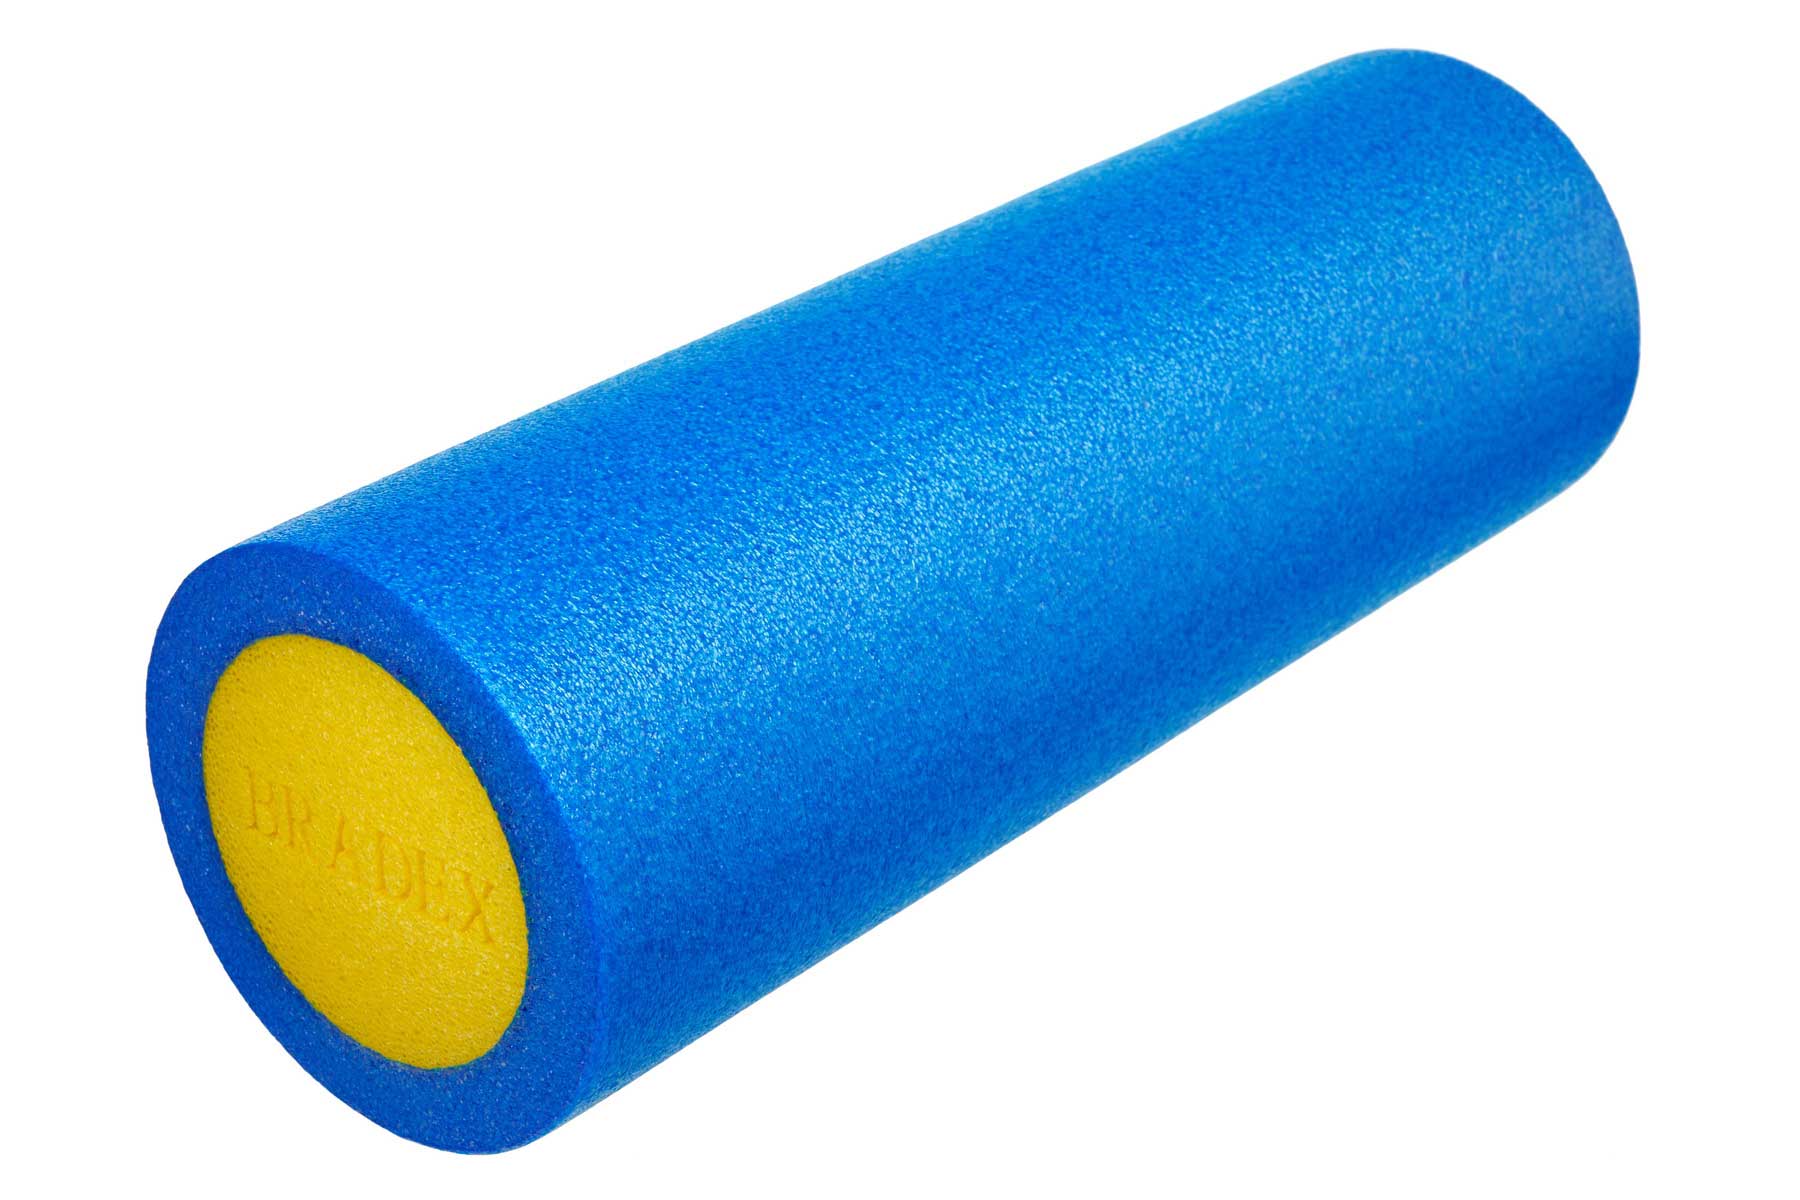 Ролик для йоги и пилатеса Bradex SF 0818, 15*45 см, голубой